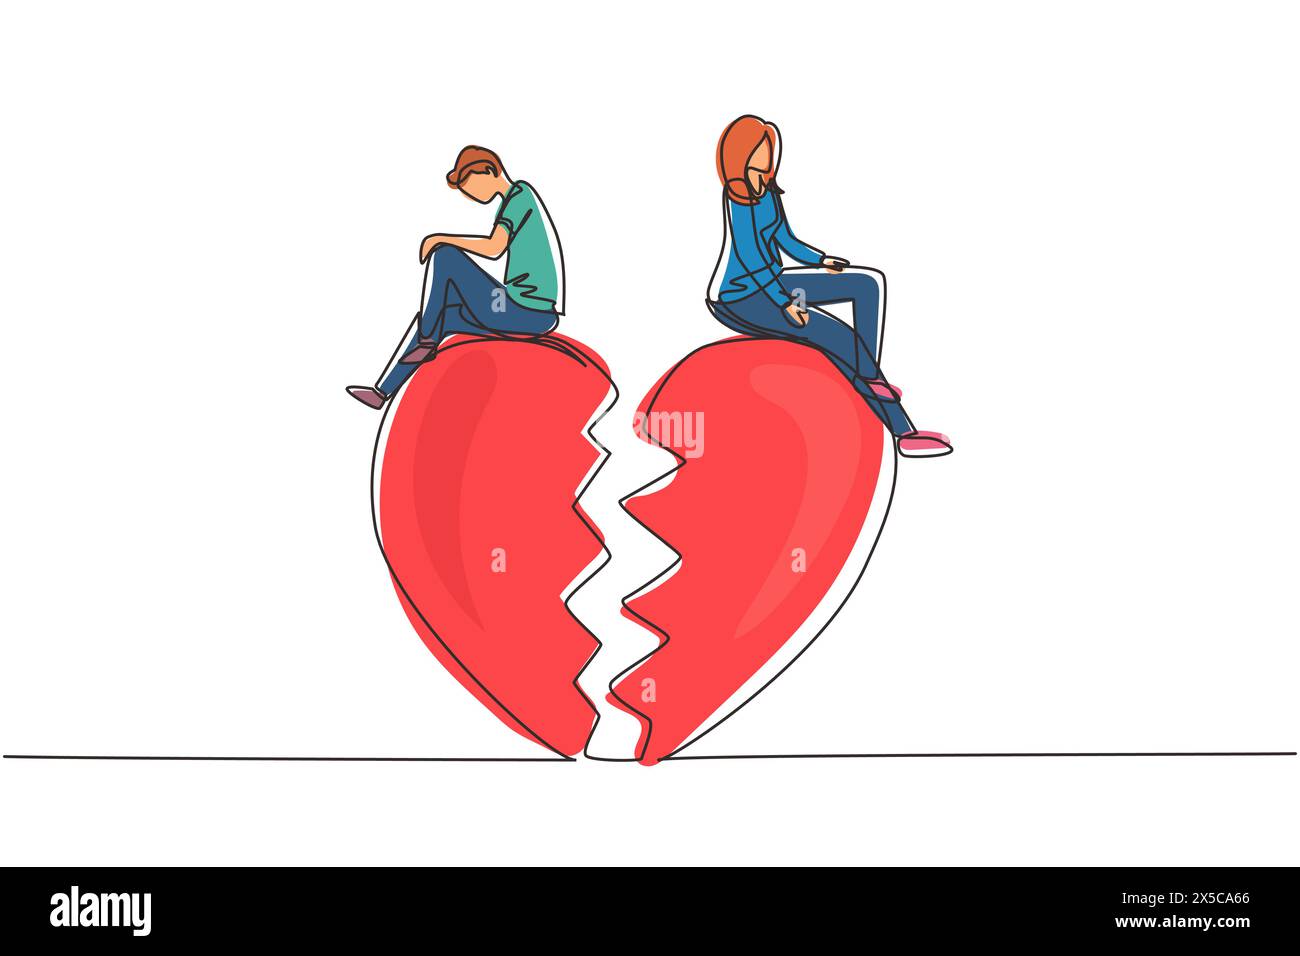 Eine Beziehung zwischen einer kontinuierlichen Linienzeichnung bricht zusammen, gebrochenes Herz, Paar zeigt entgegengesetzte Richtung. Ein Paar sitzt auf einer großen gebrochenen Herzform. Dynami Stock Vektor